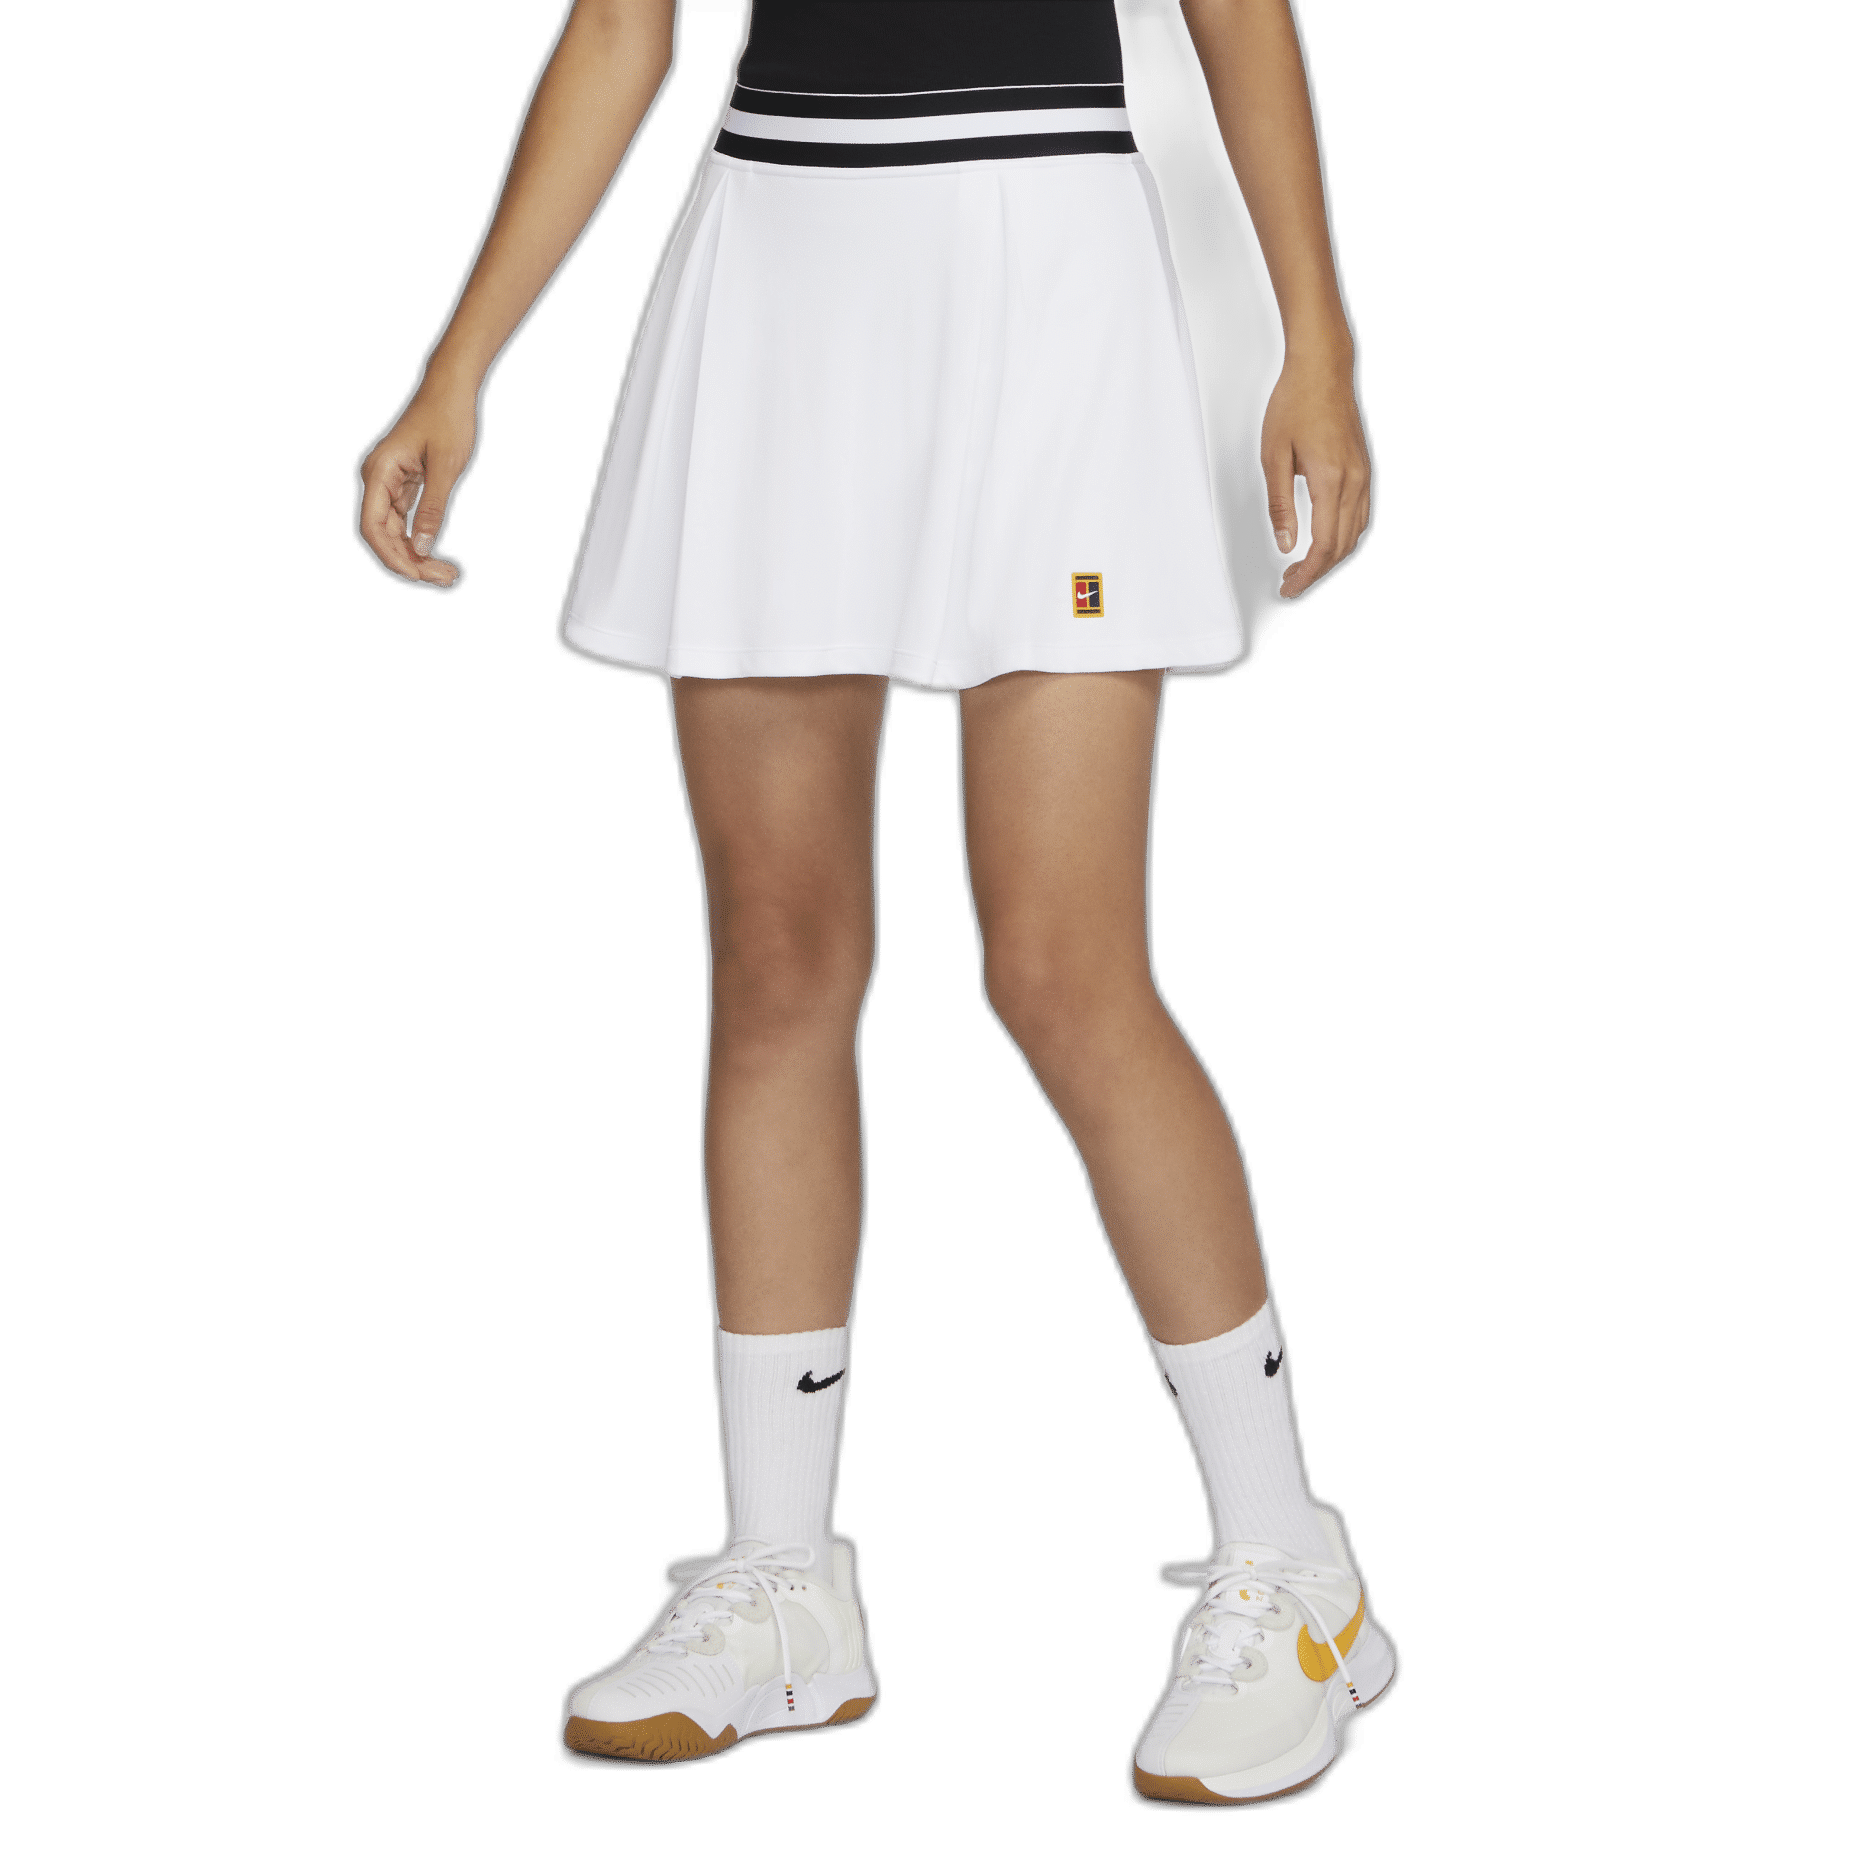 Váy Tennis Nữ Big Size Giá Tốt T082023  Mua tại Lazadavn